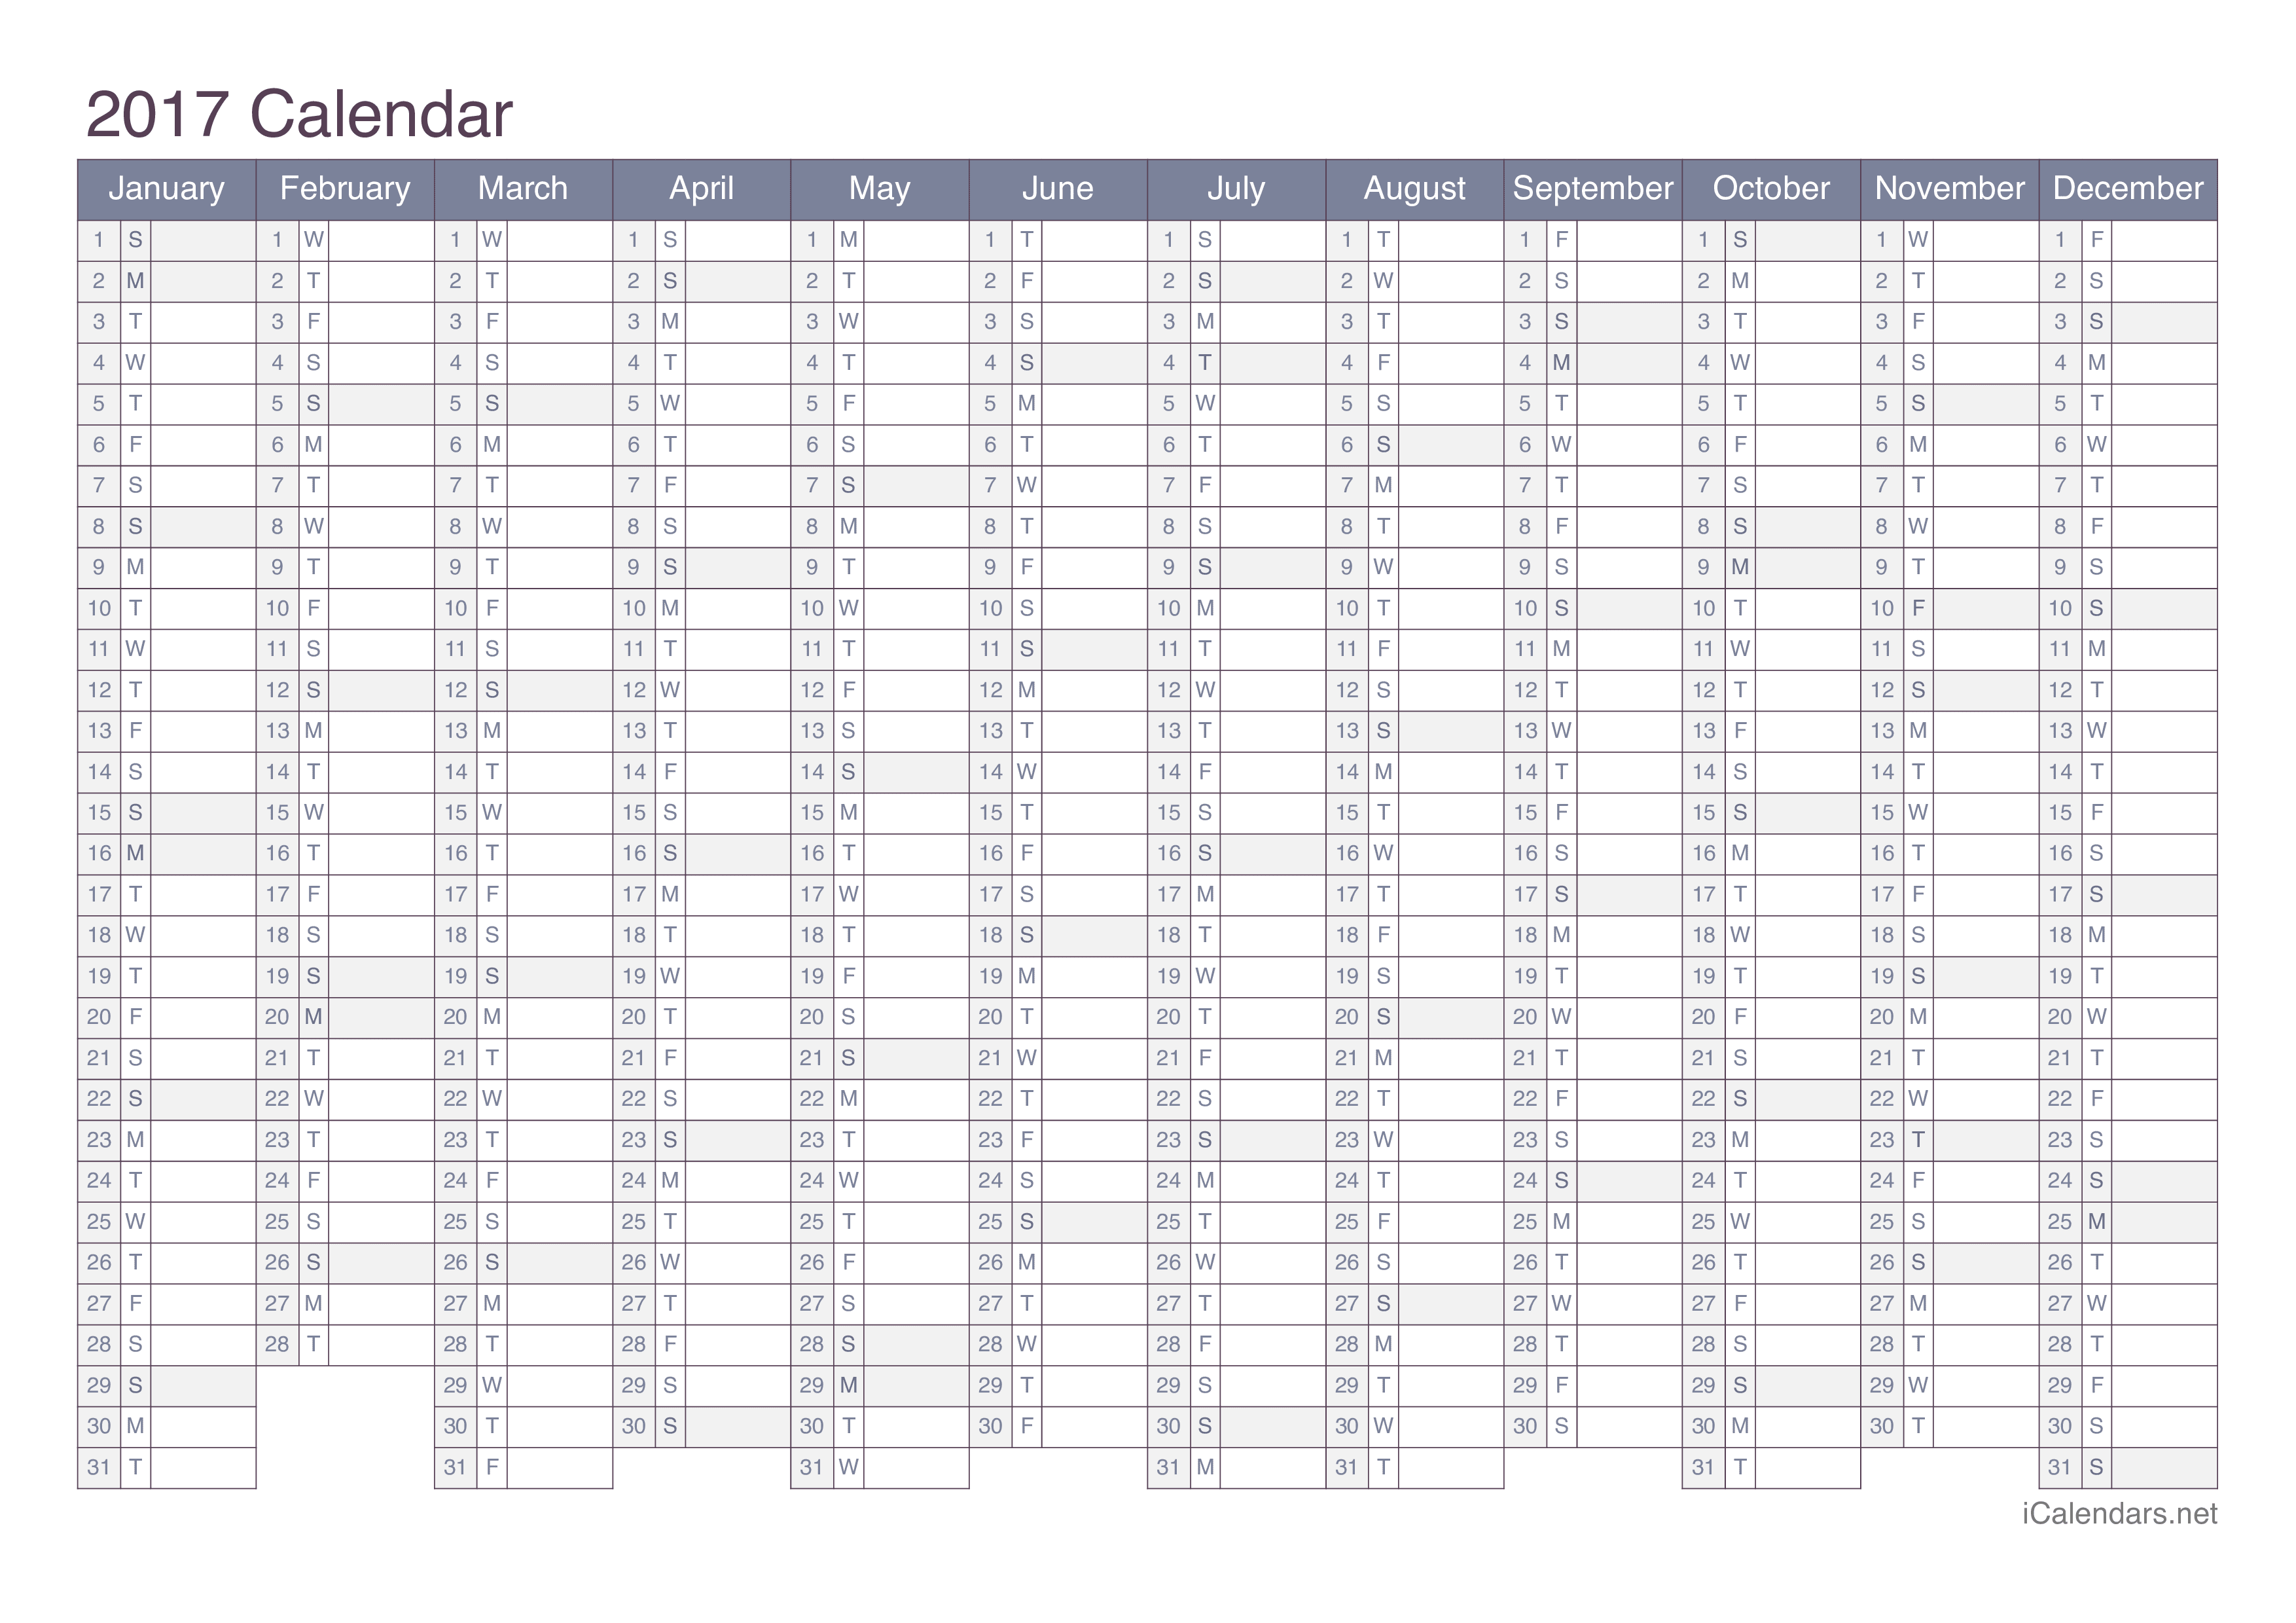 2017 Calendar - Office